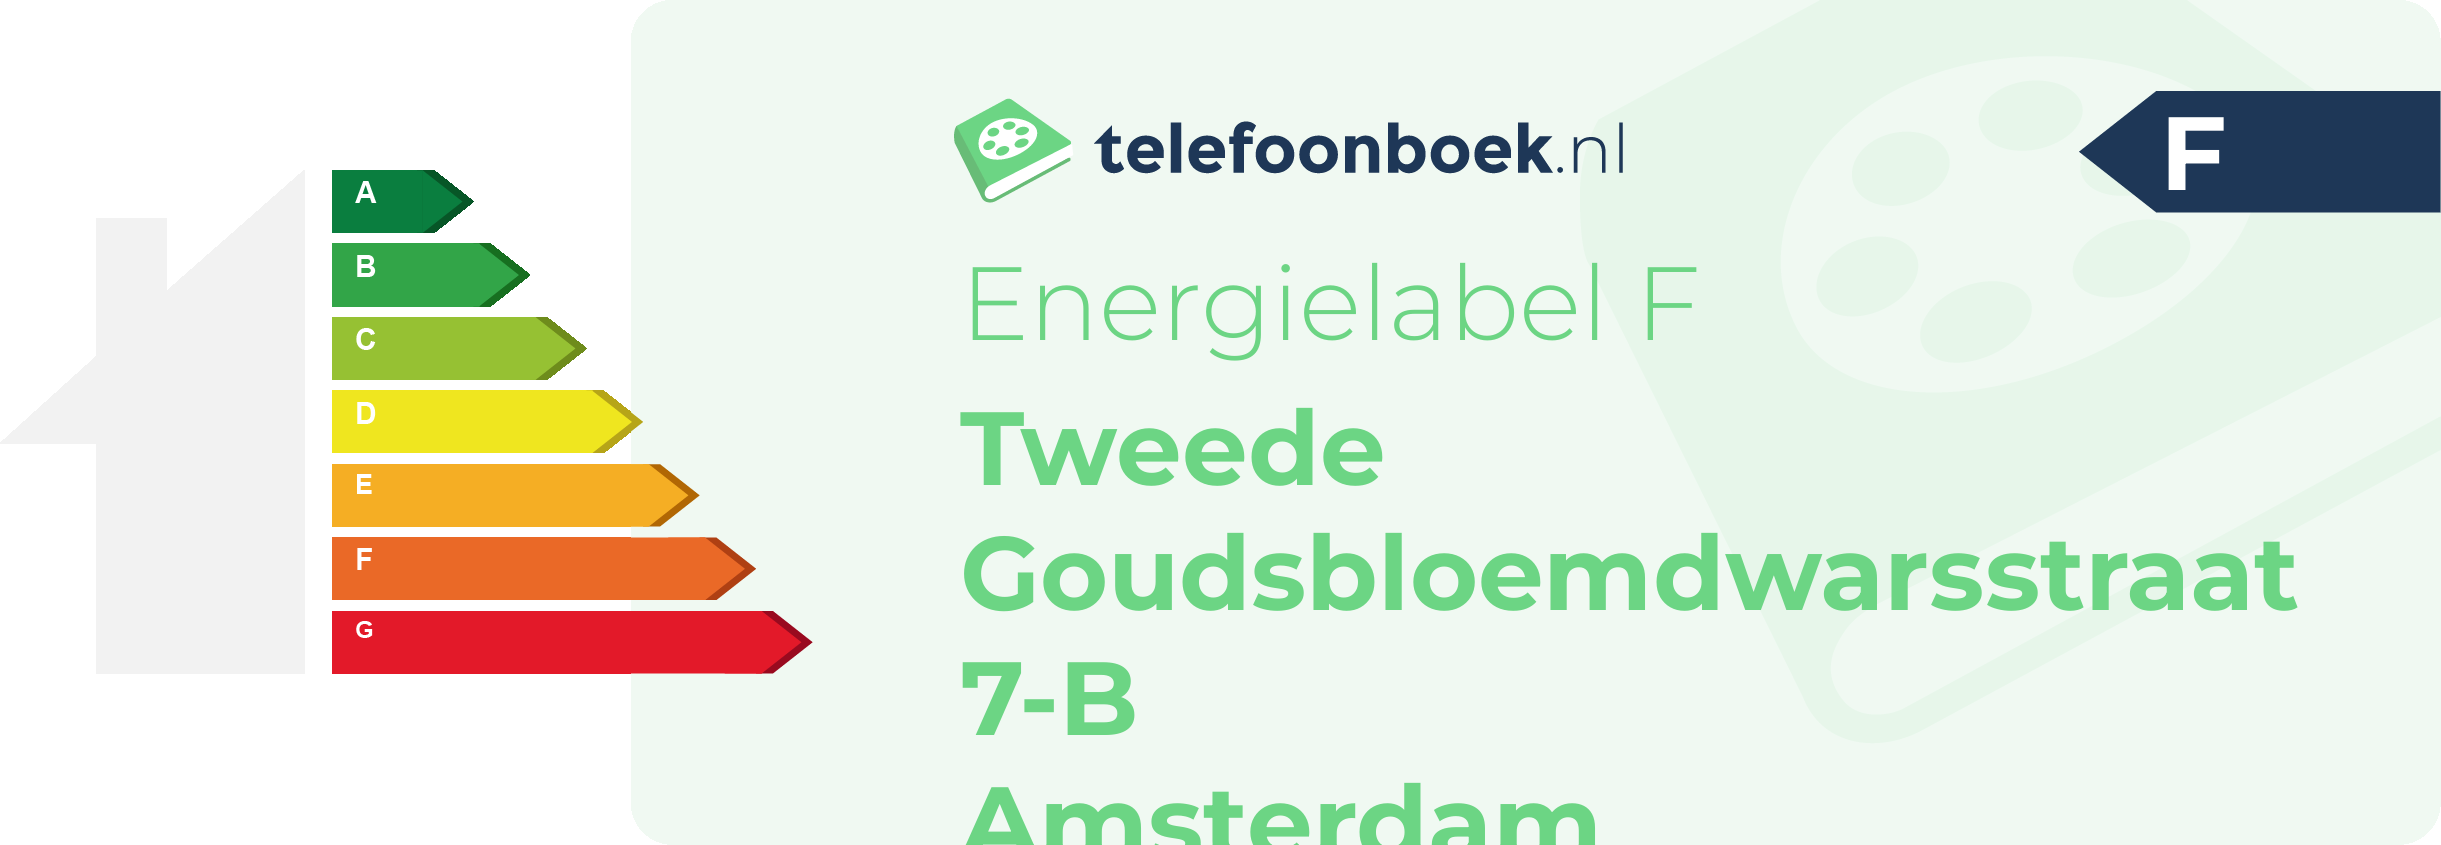 Energielabel Tweede Goudsbloemdwarsstraat 7-B Amsterdam